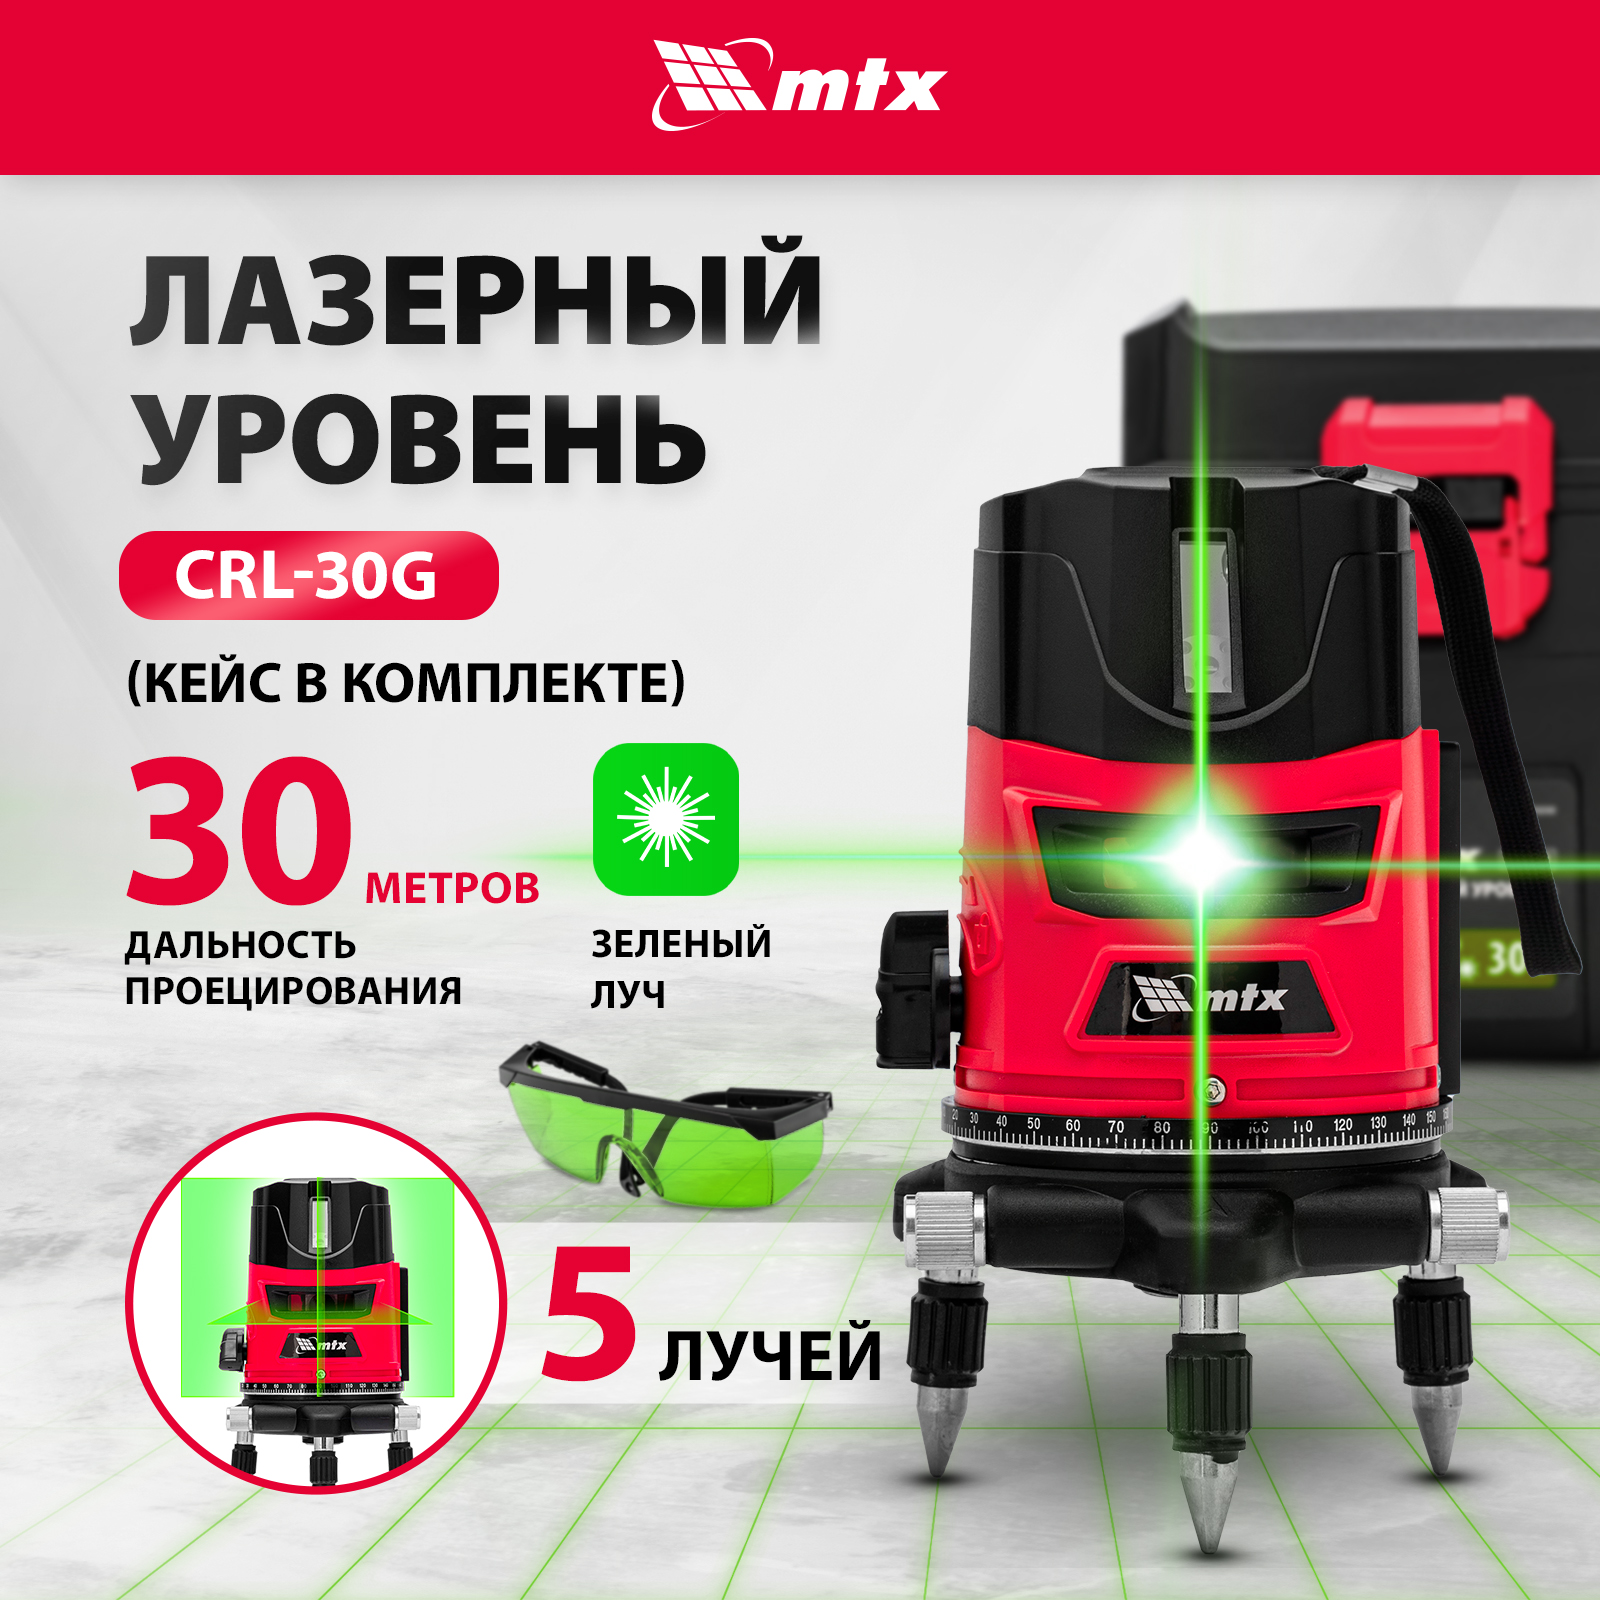 Лазерный уровень MTX CRL-30G, 30 м, зеленый луч, акк. Li 2400 mah, резьба 5/8